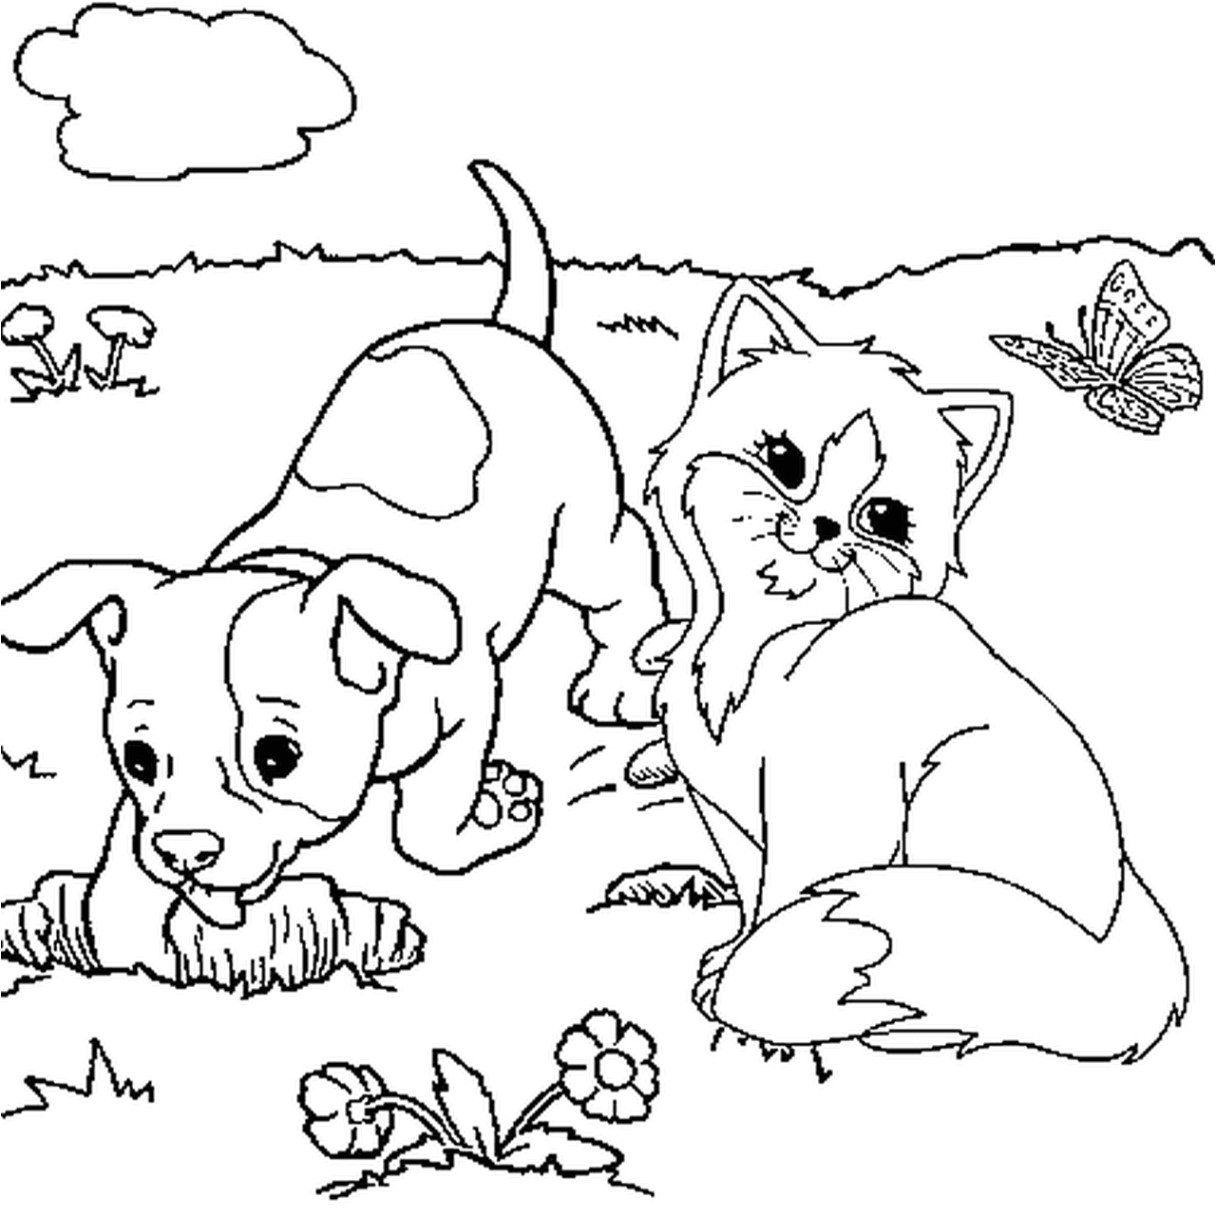 coloriage chien et chat imprimer intended for chien et chat coloriage